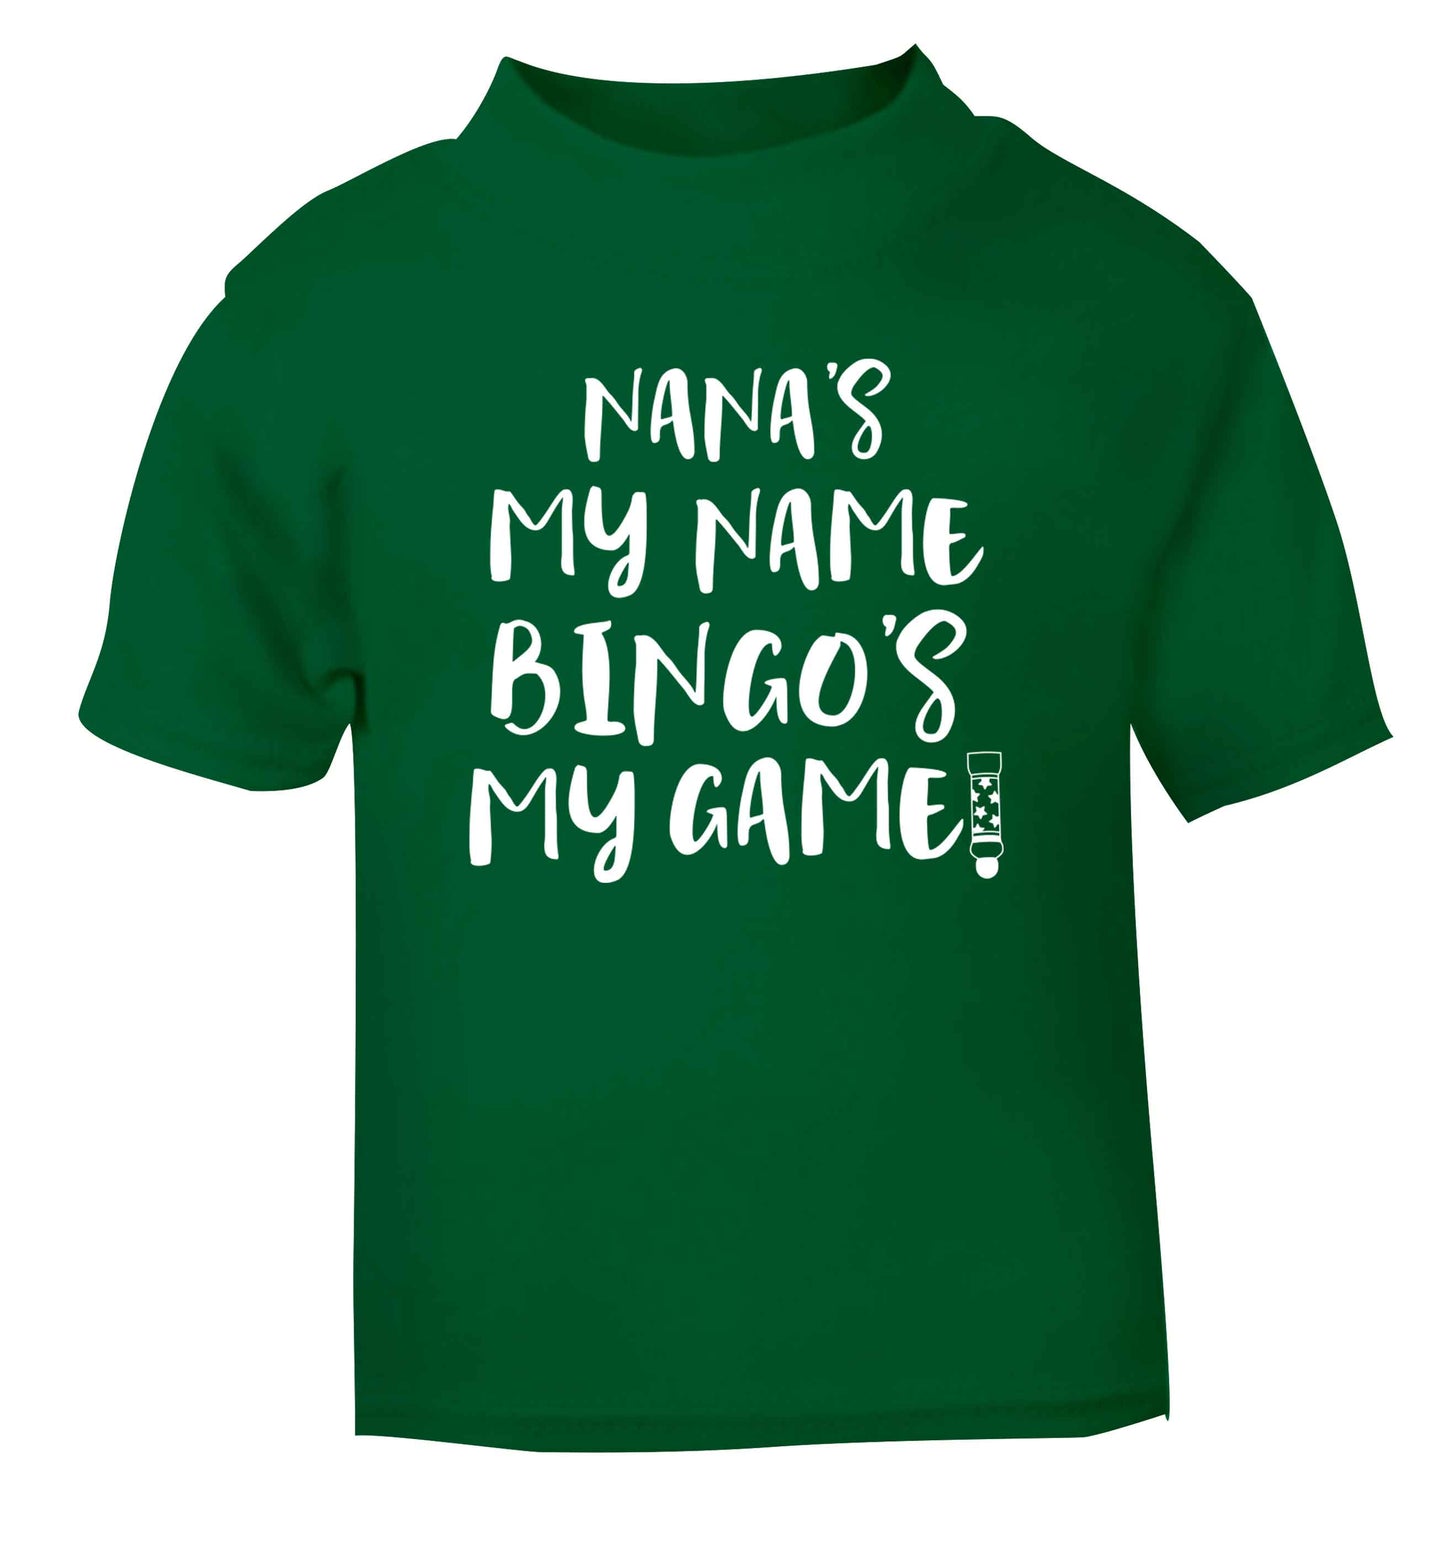 Nana's my name bingo's my game! green Baby Toddler Tshirt 2 Years